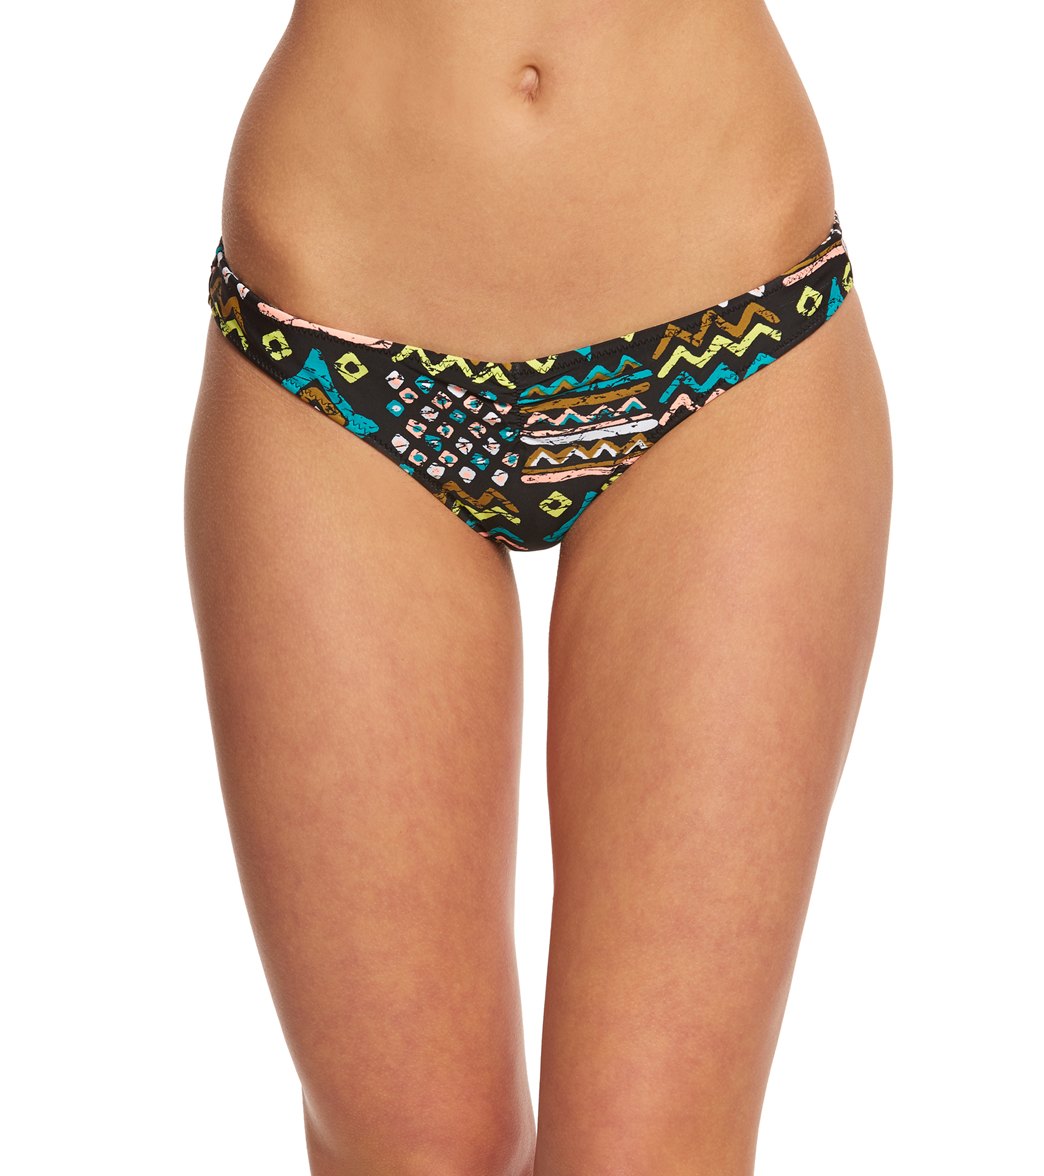 Volcom Tribal Instinct Reversible V Bikini Bottom - Black Xl Nylon/Elastane - Swimoutlet.com